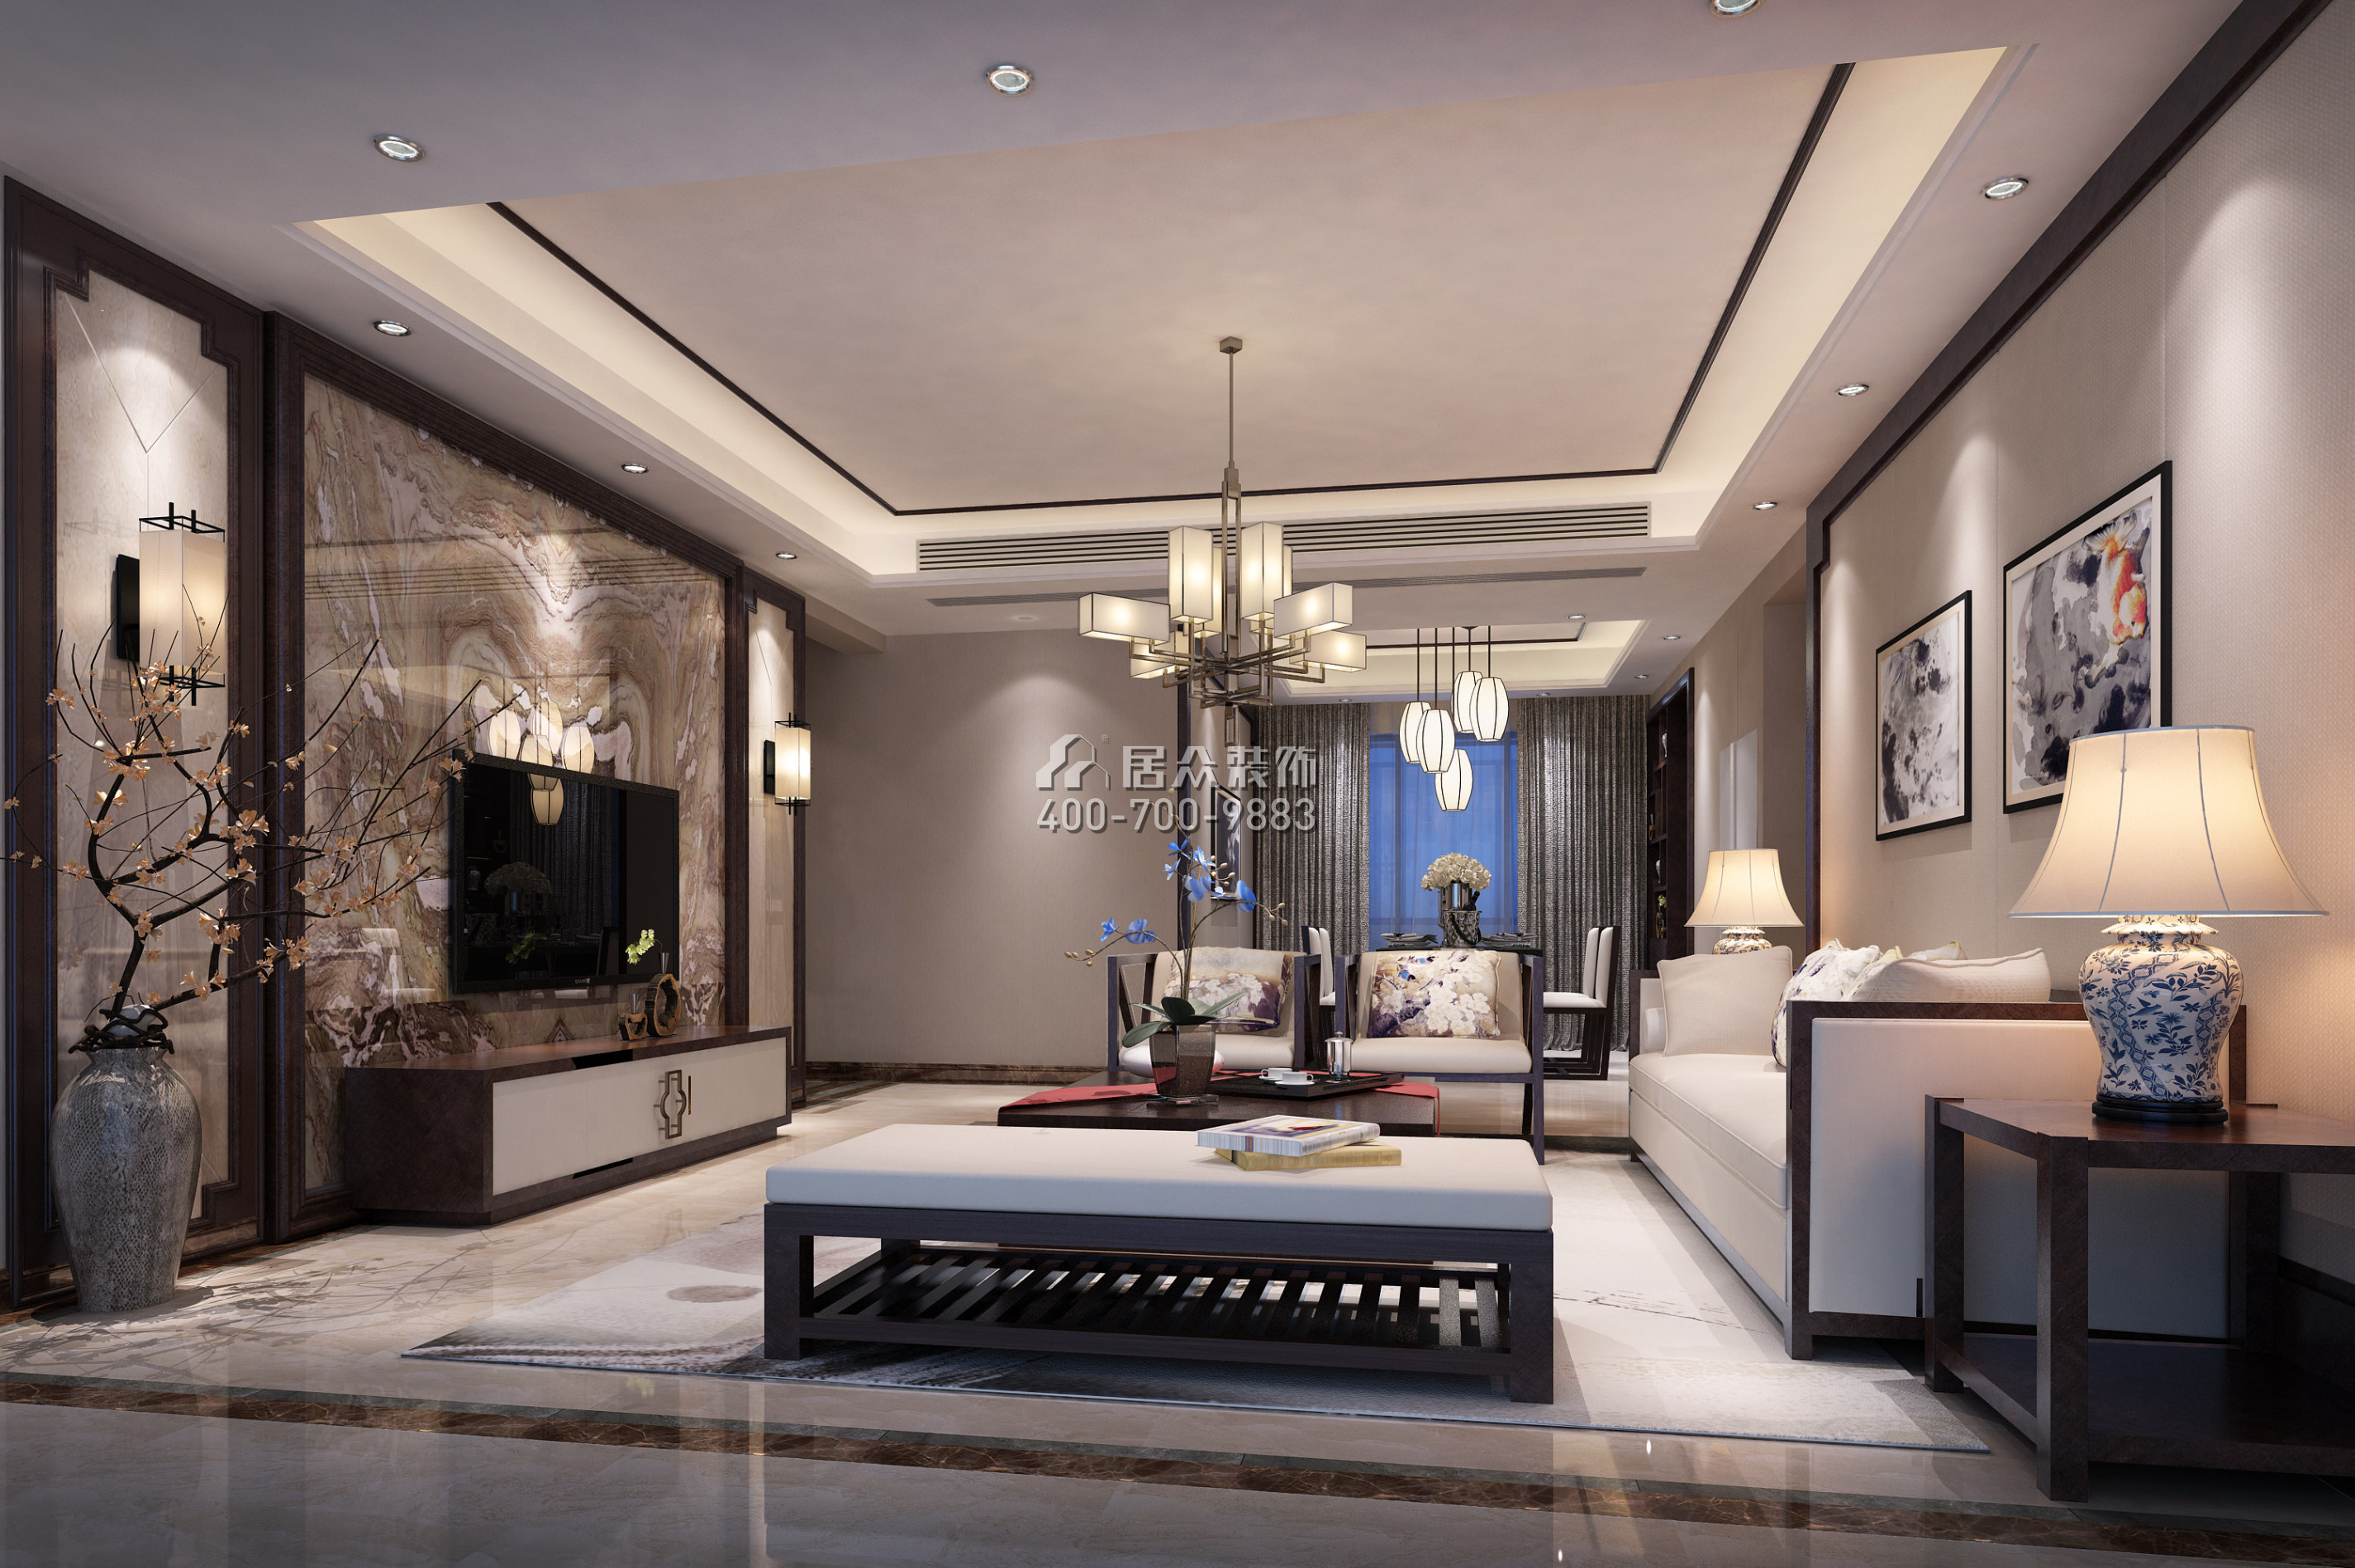 水木丹華143平方米混搭風格平層戶型客廳裝修效果圖